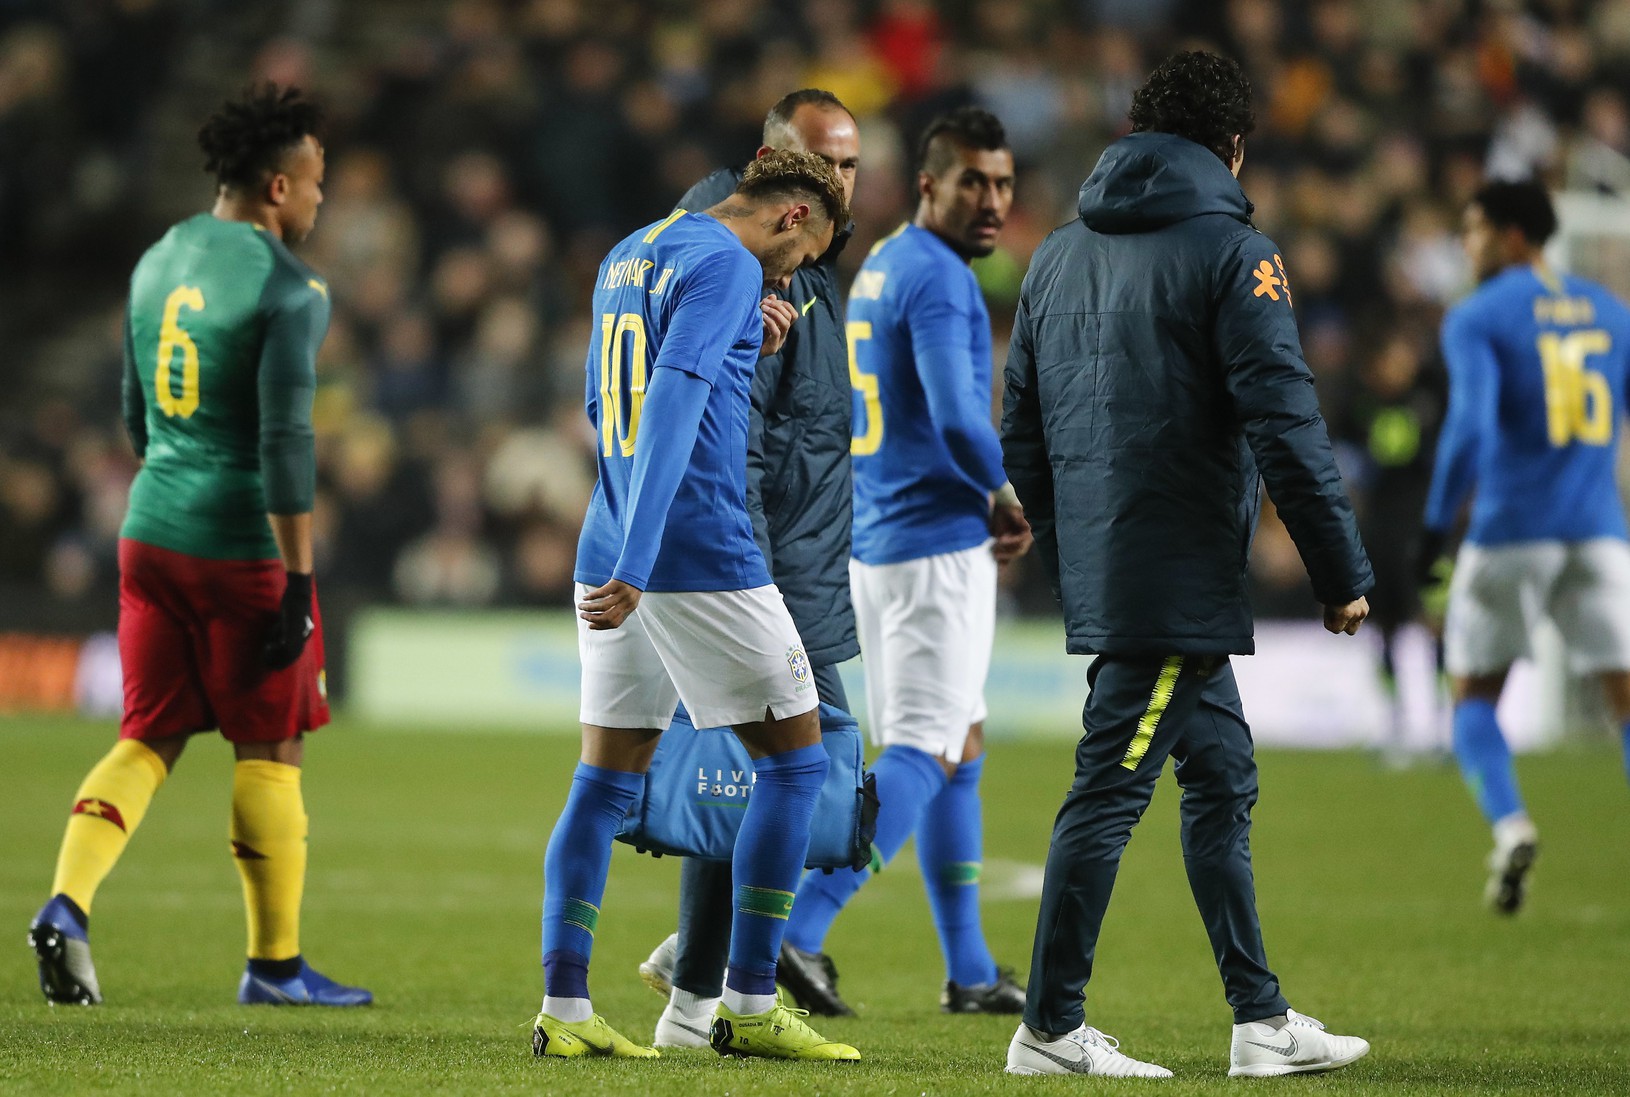 Zranený Neymar opúšťa hraciu